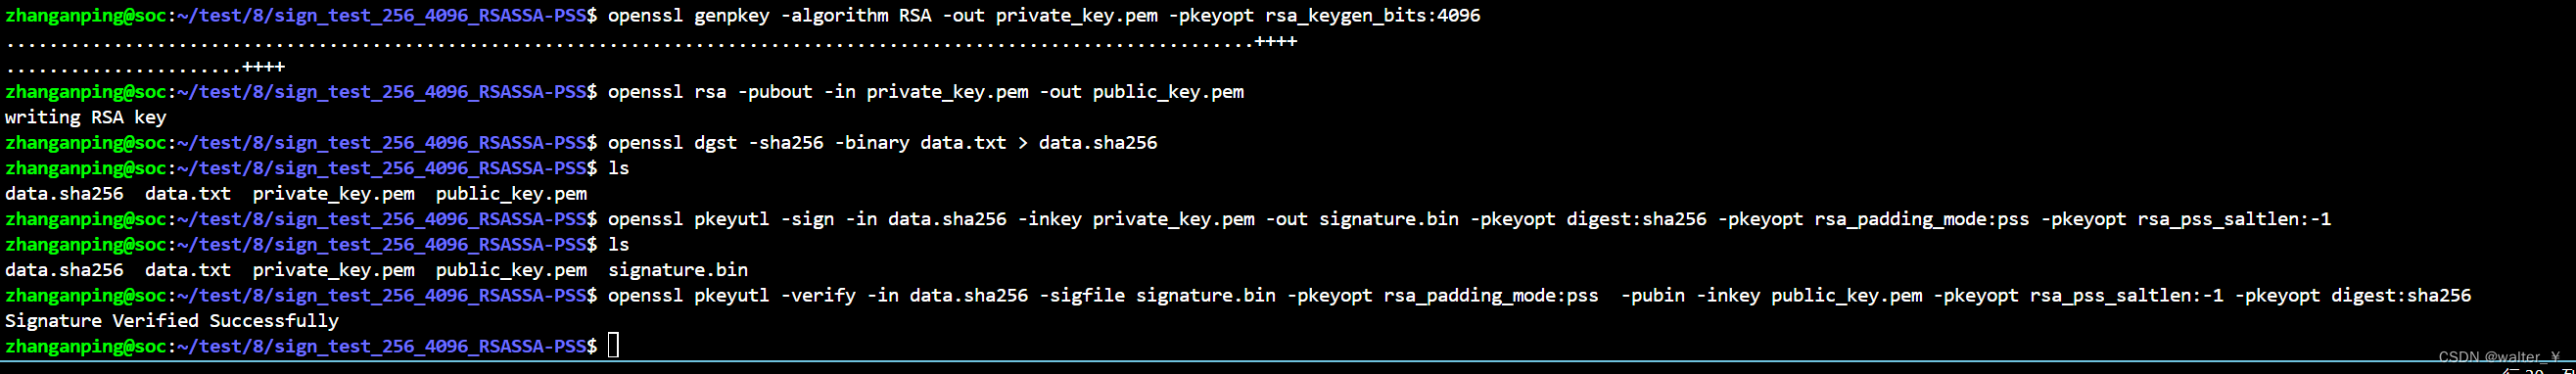 openssl 命令行生成密钥对，生成hash，PSS填充签名，校验